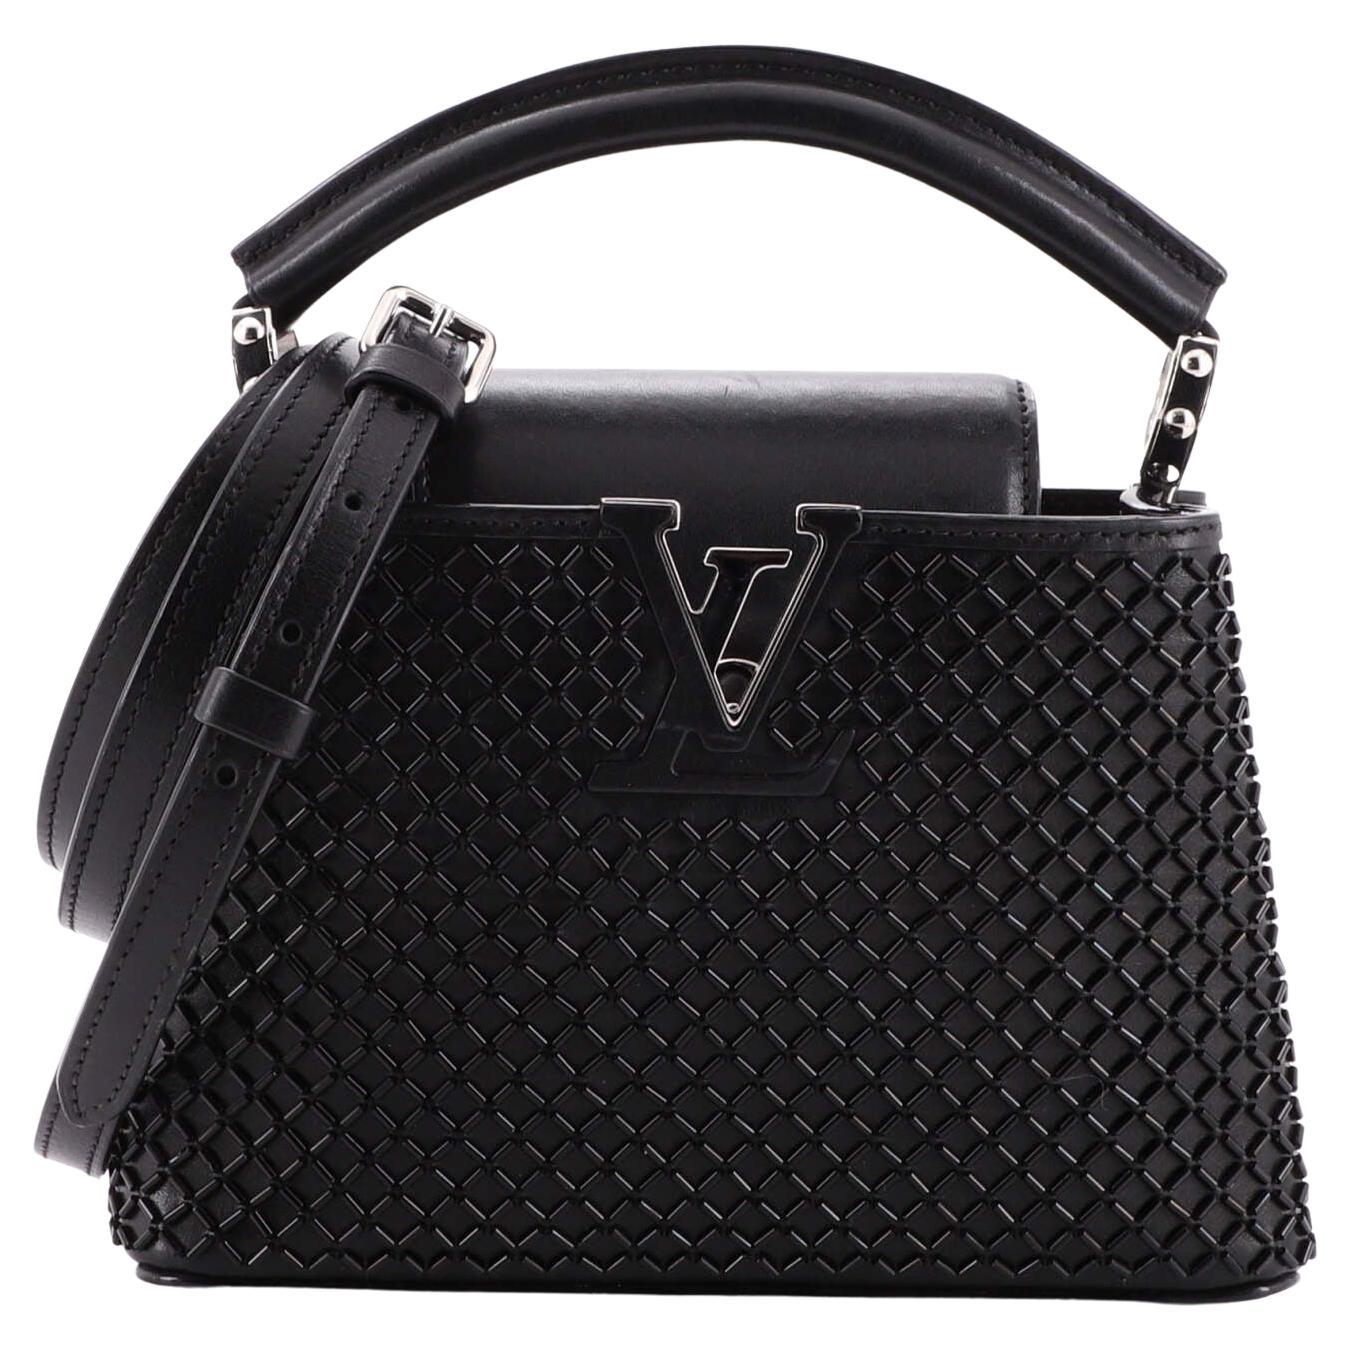 Sold at Auction: Louis Vuitton, LOUIS VUITTON. Capucines coco bag